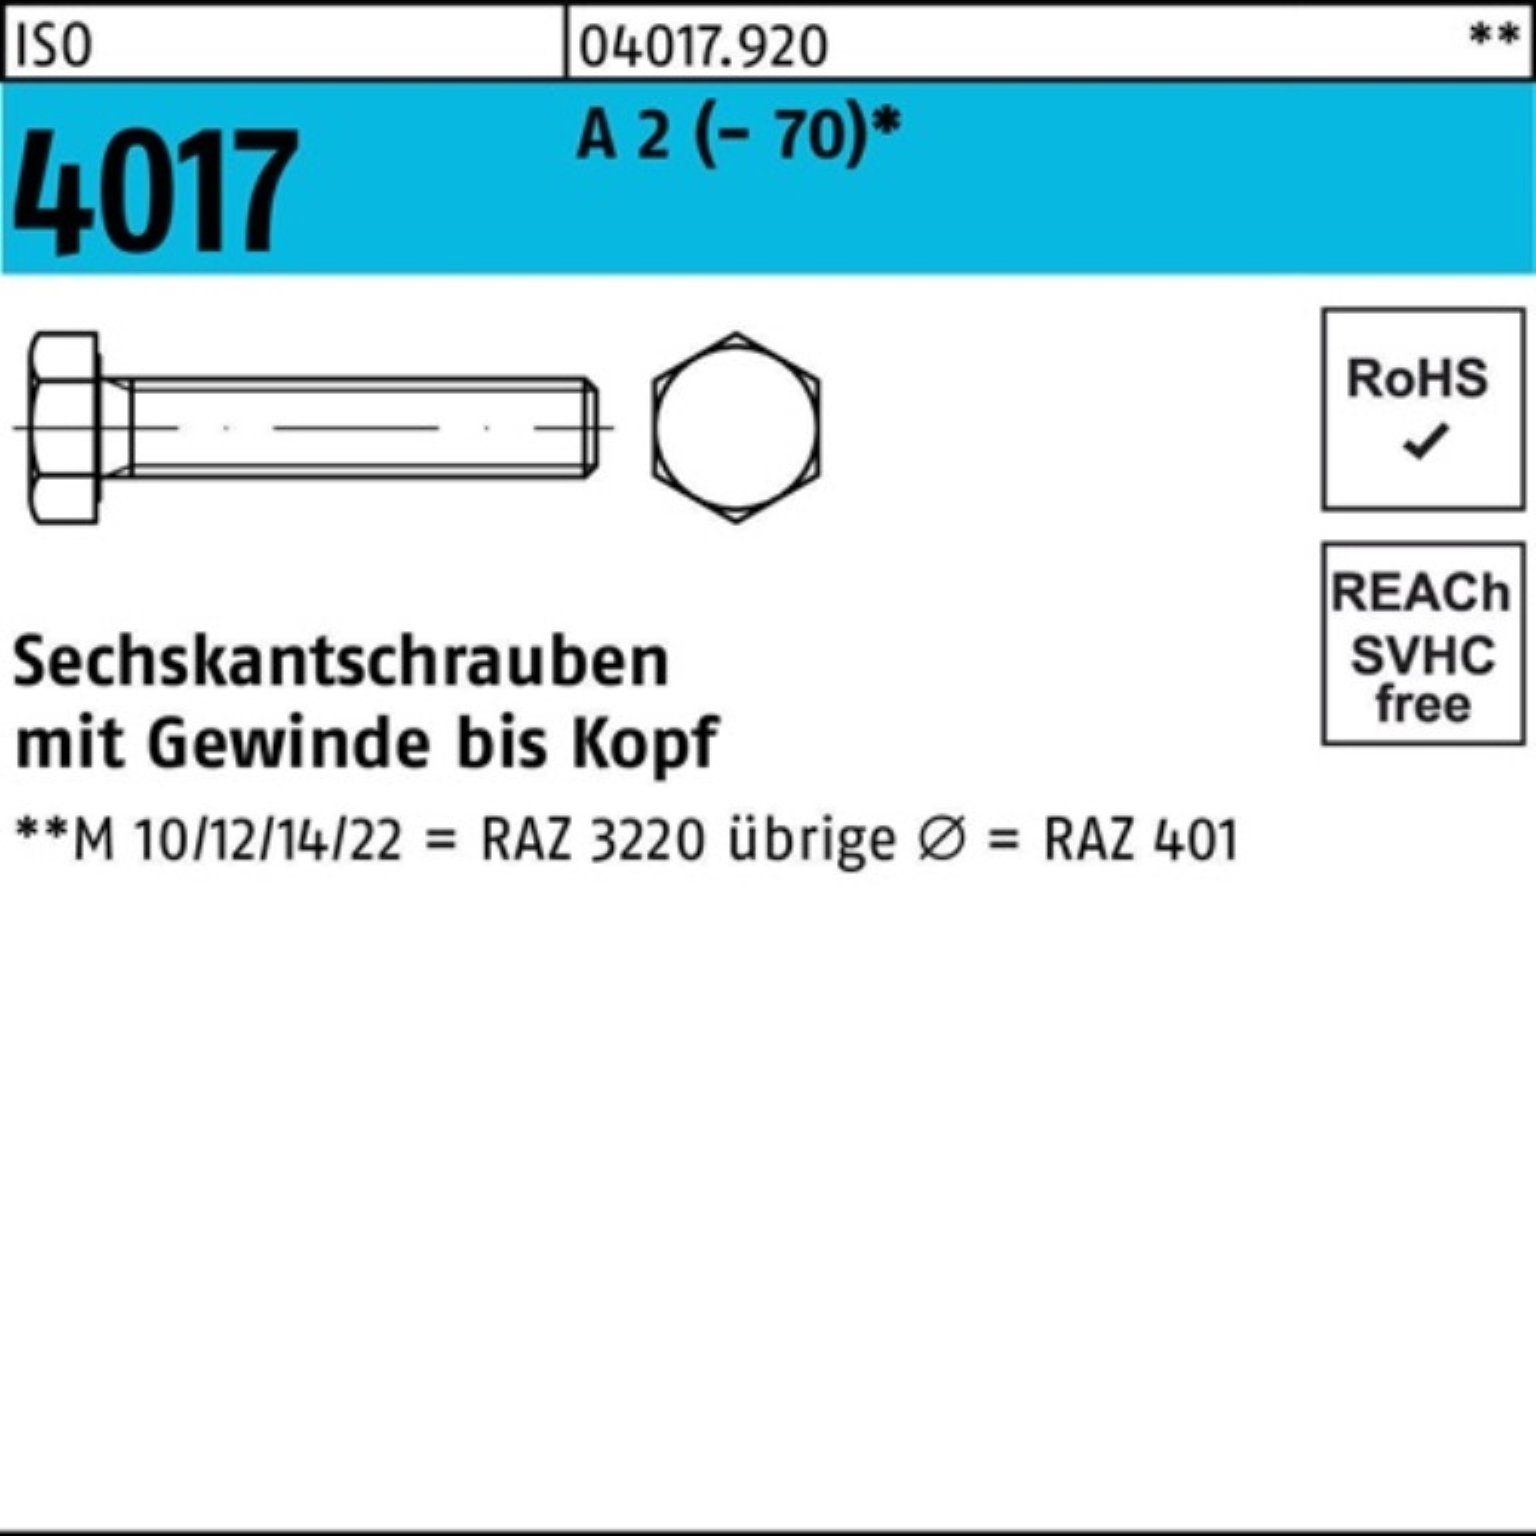 Bufab Sechskantschraube 100er Pack Sechskantschraube ISO 4017 VG M12x 160 A 2 (70) 1 Stück